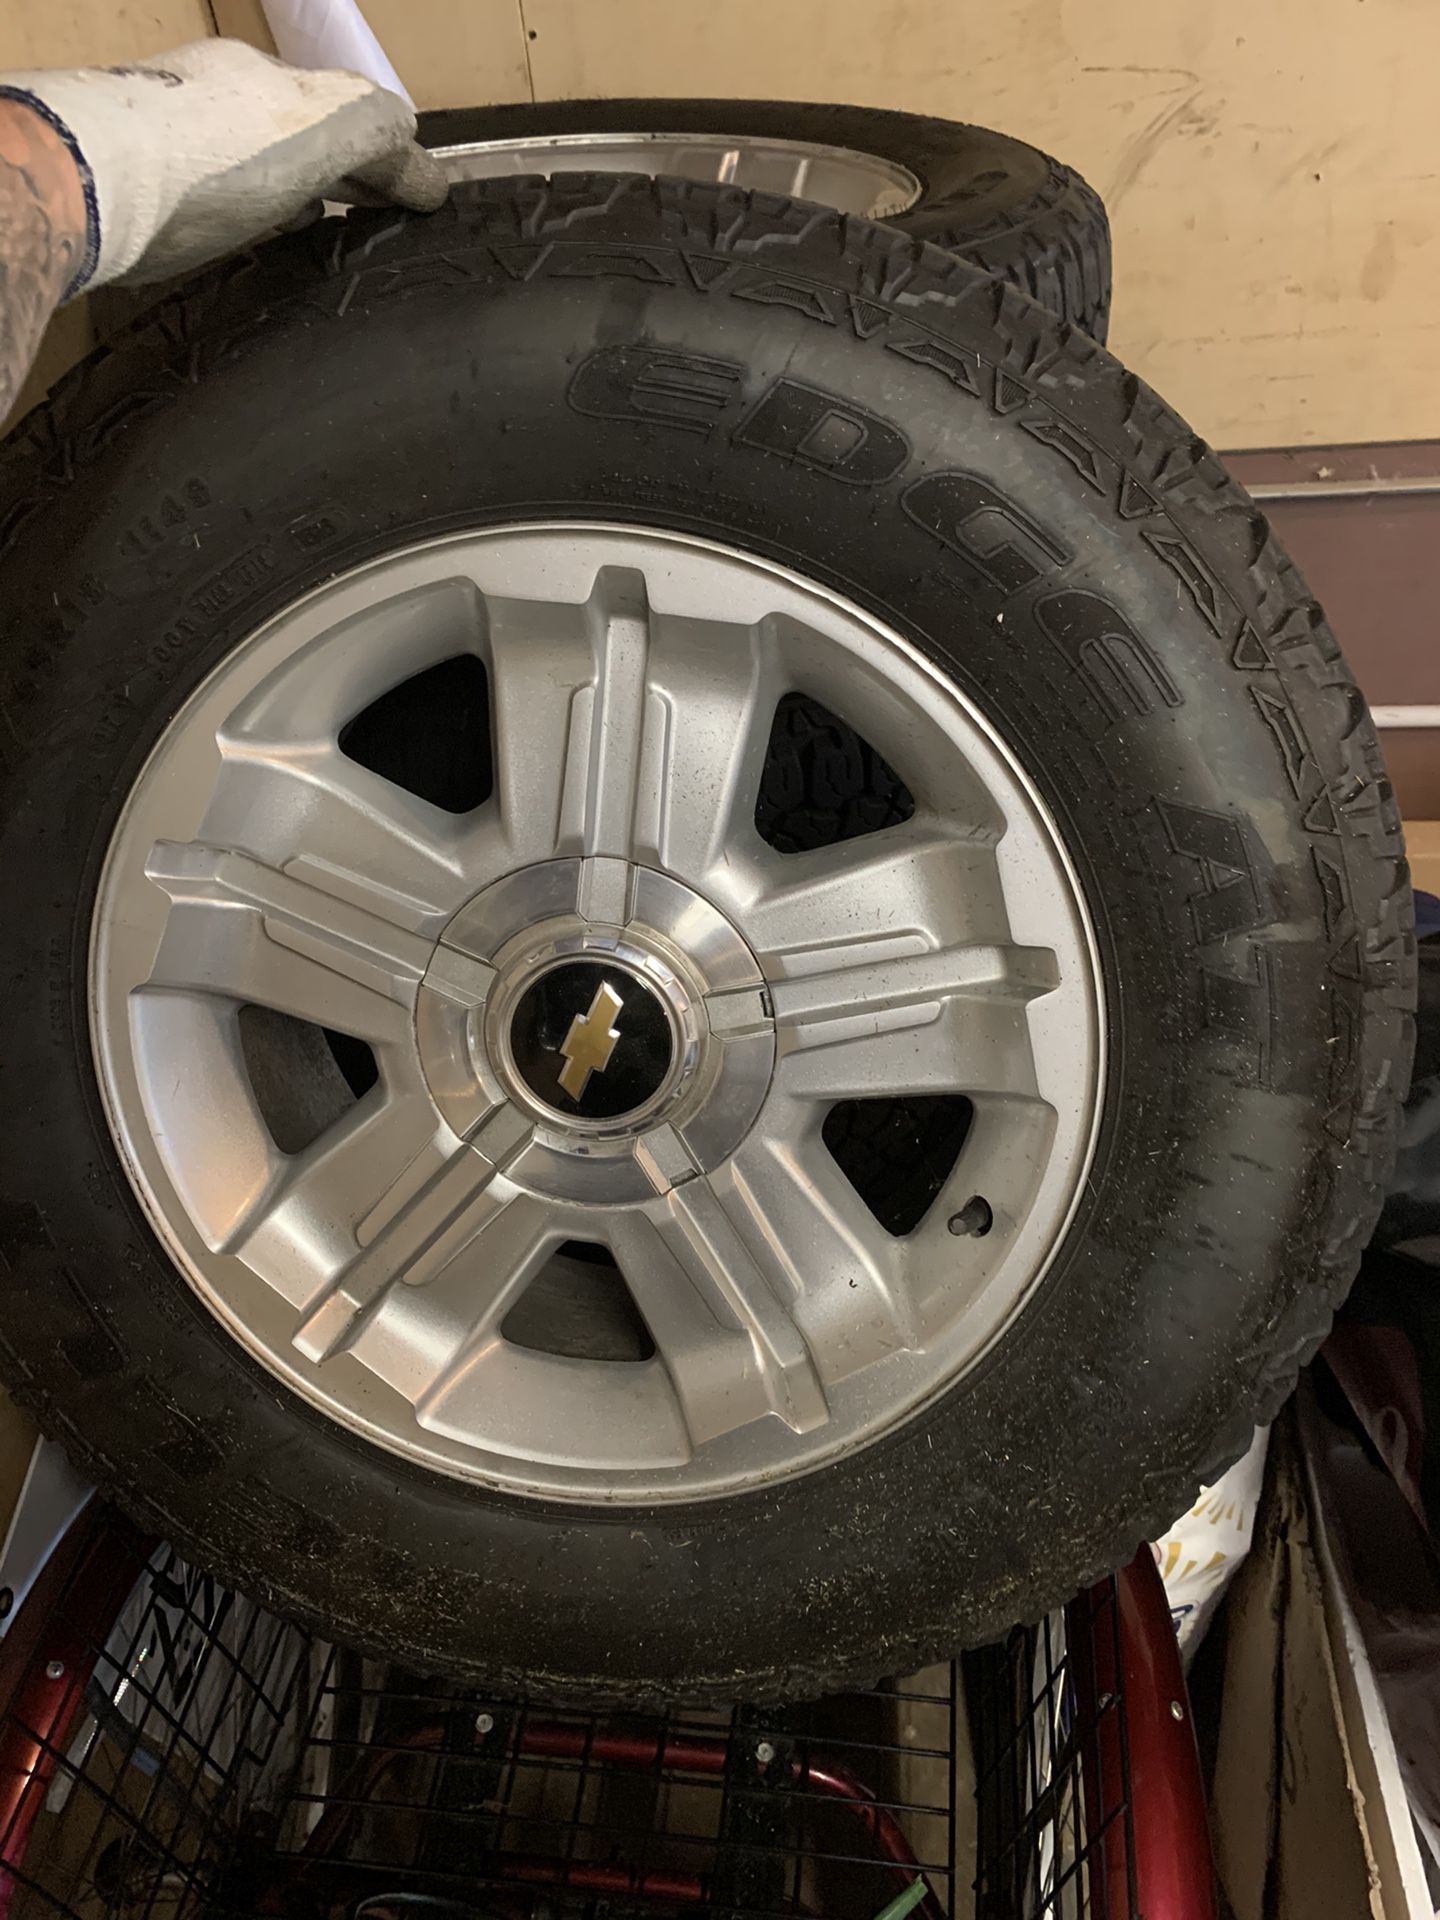 18” Silverado wheels